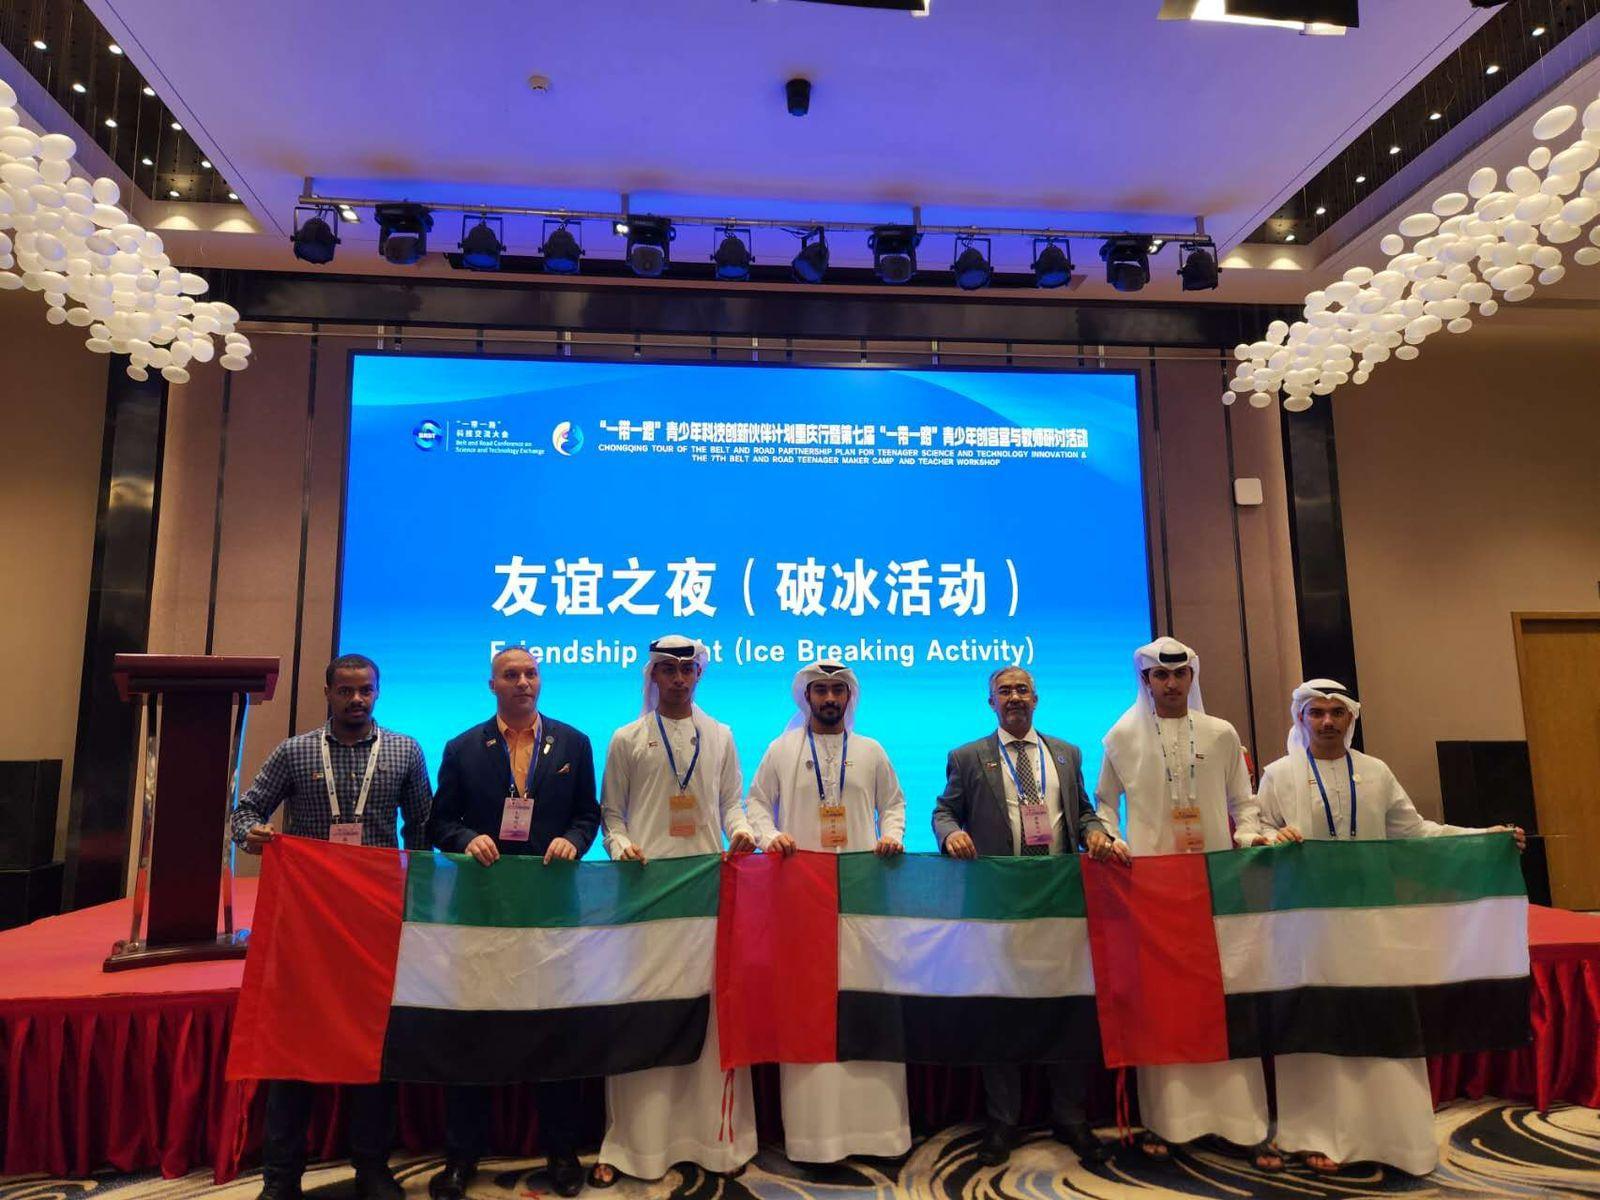 نادي الفجيرة العلمي يختتم مشاركة ناجحة  في المخيم العلمي الدولي بالصين